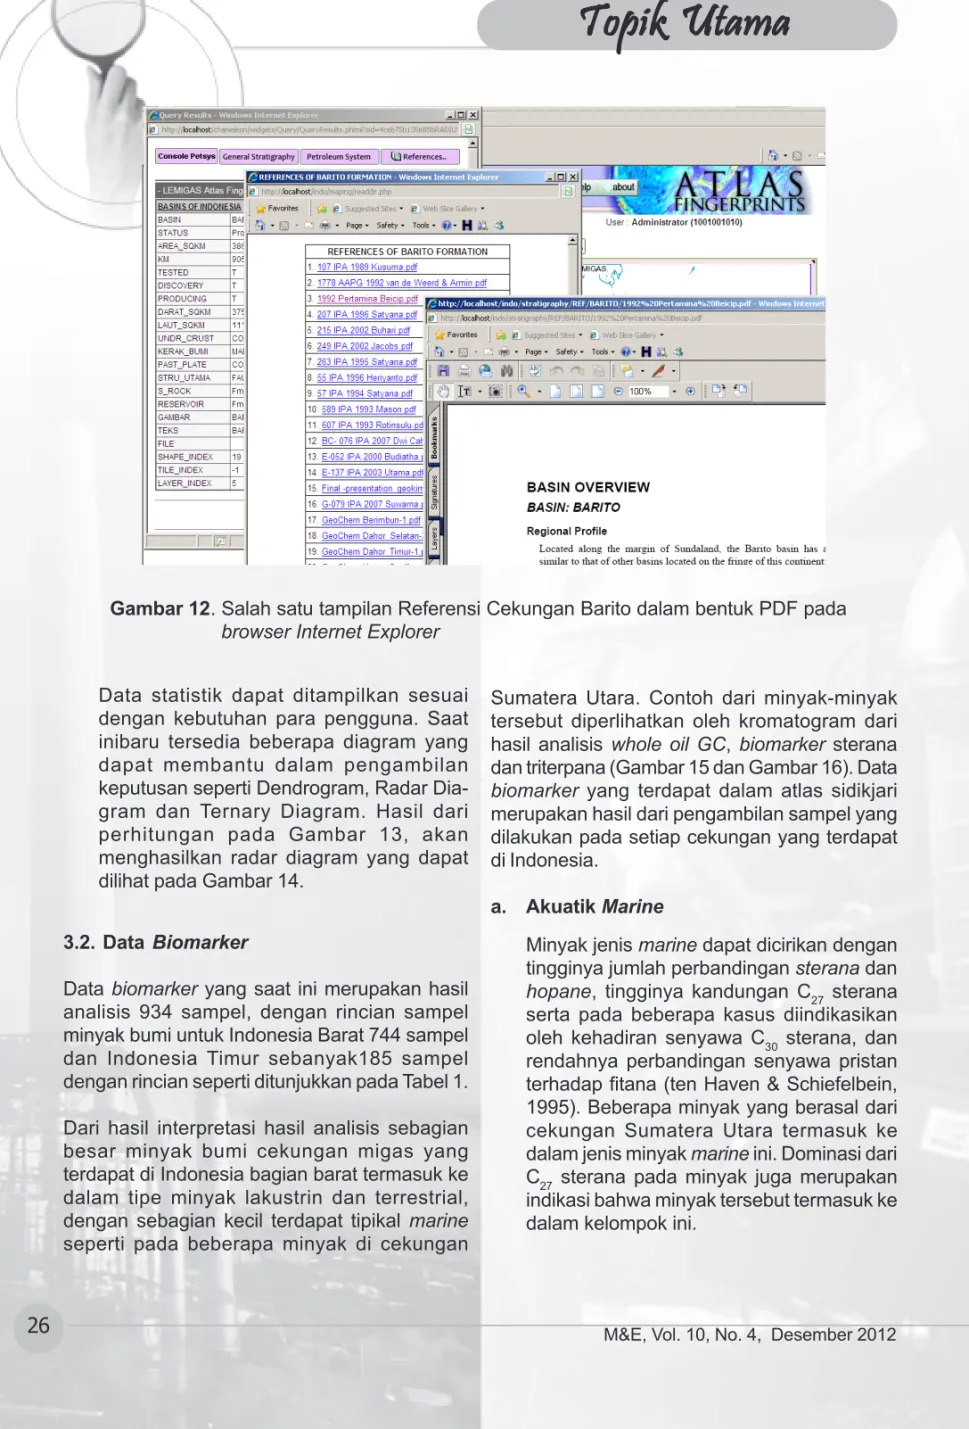 Gambar 12. Salah satu tampilan Referensi Cekungan Barito dalam bentuk PDF pada browser Internet Explorer